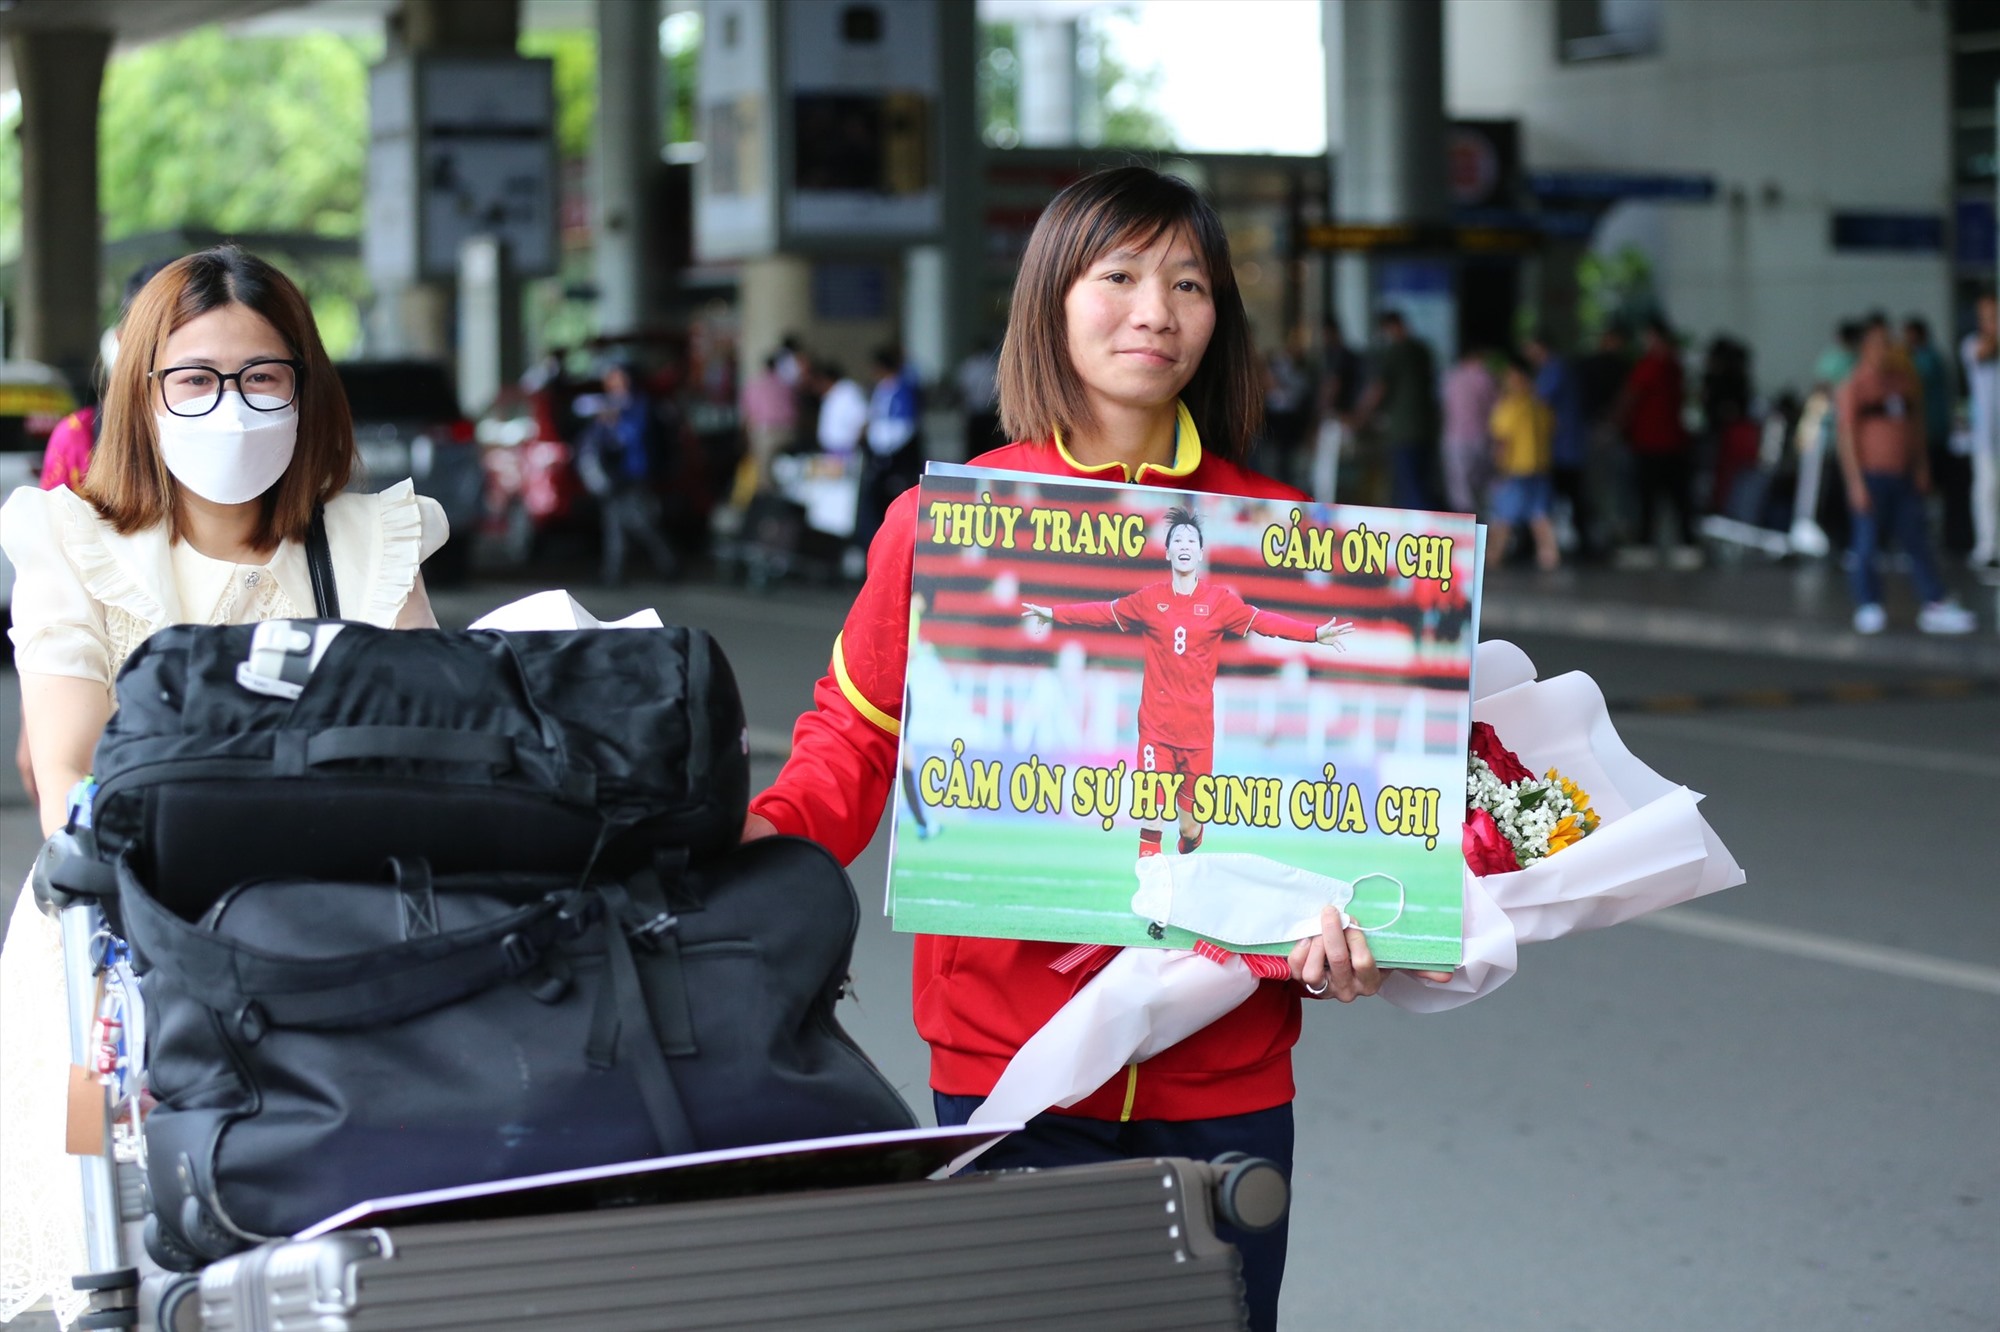 Thuỳ Trang nhận hoa từ người hâm mộ tại sân bay Tân Sơn Nhất. Ảnh: Thanh Vũ